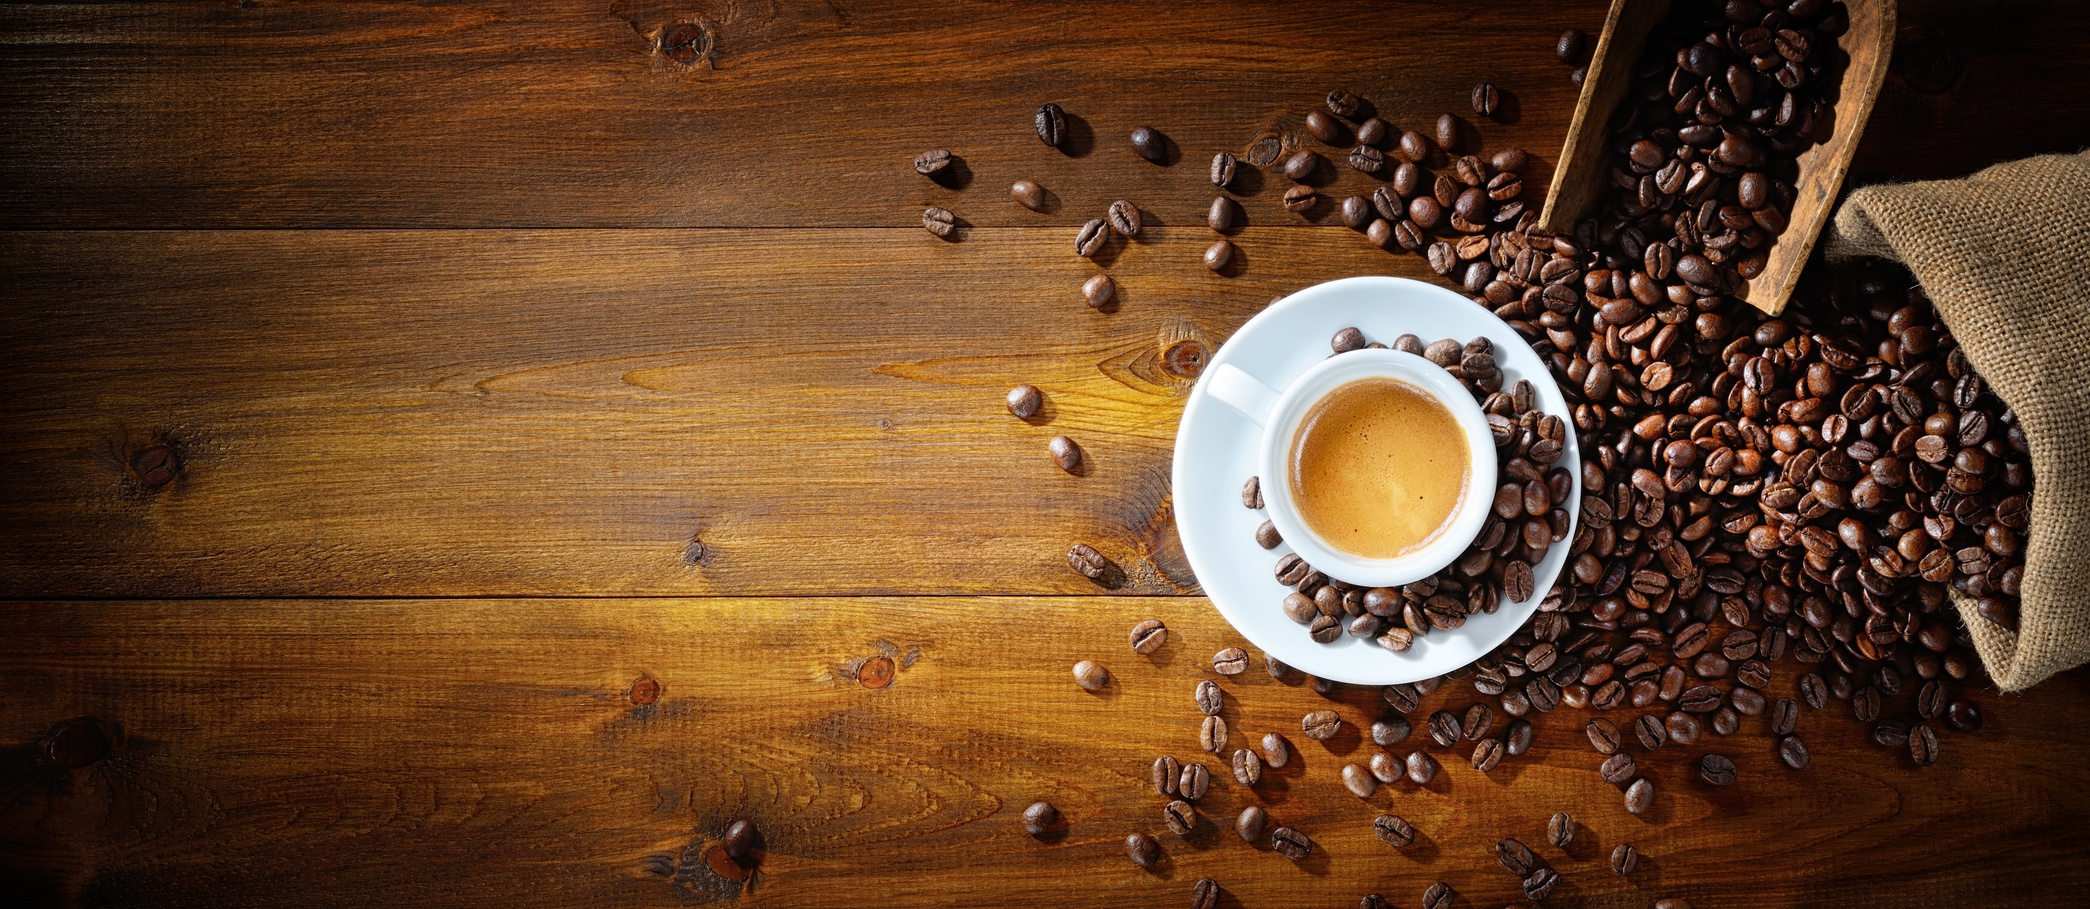 Giornata Internazionale del caffè: le 10 migliori caffetterie mondiali